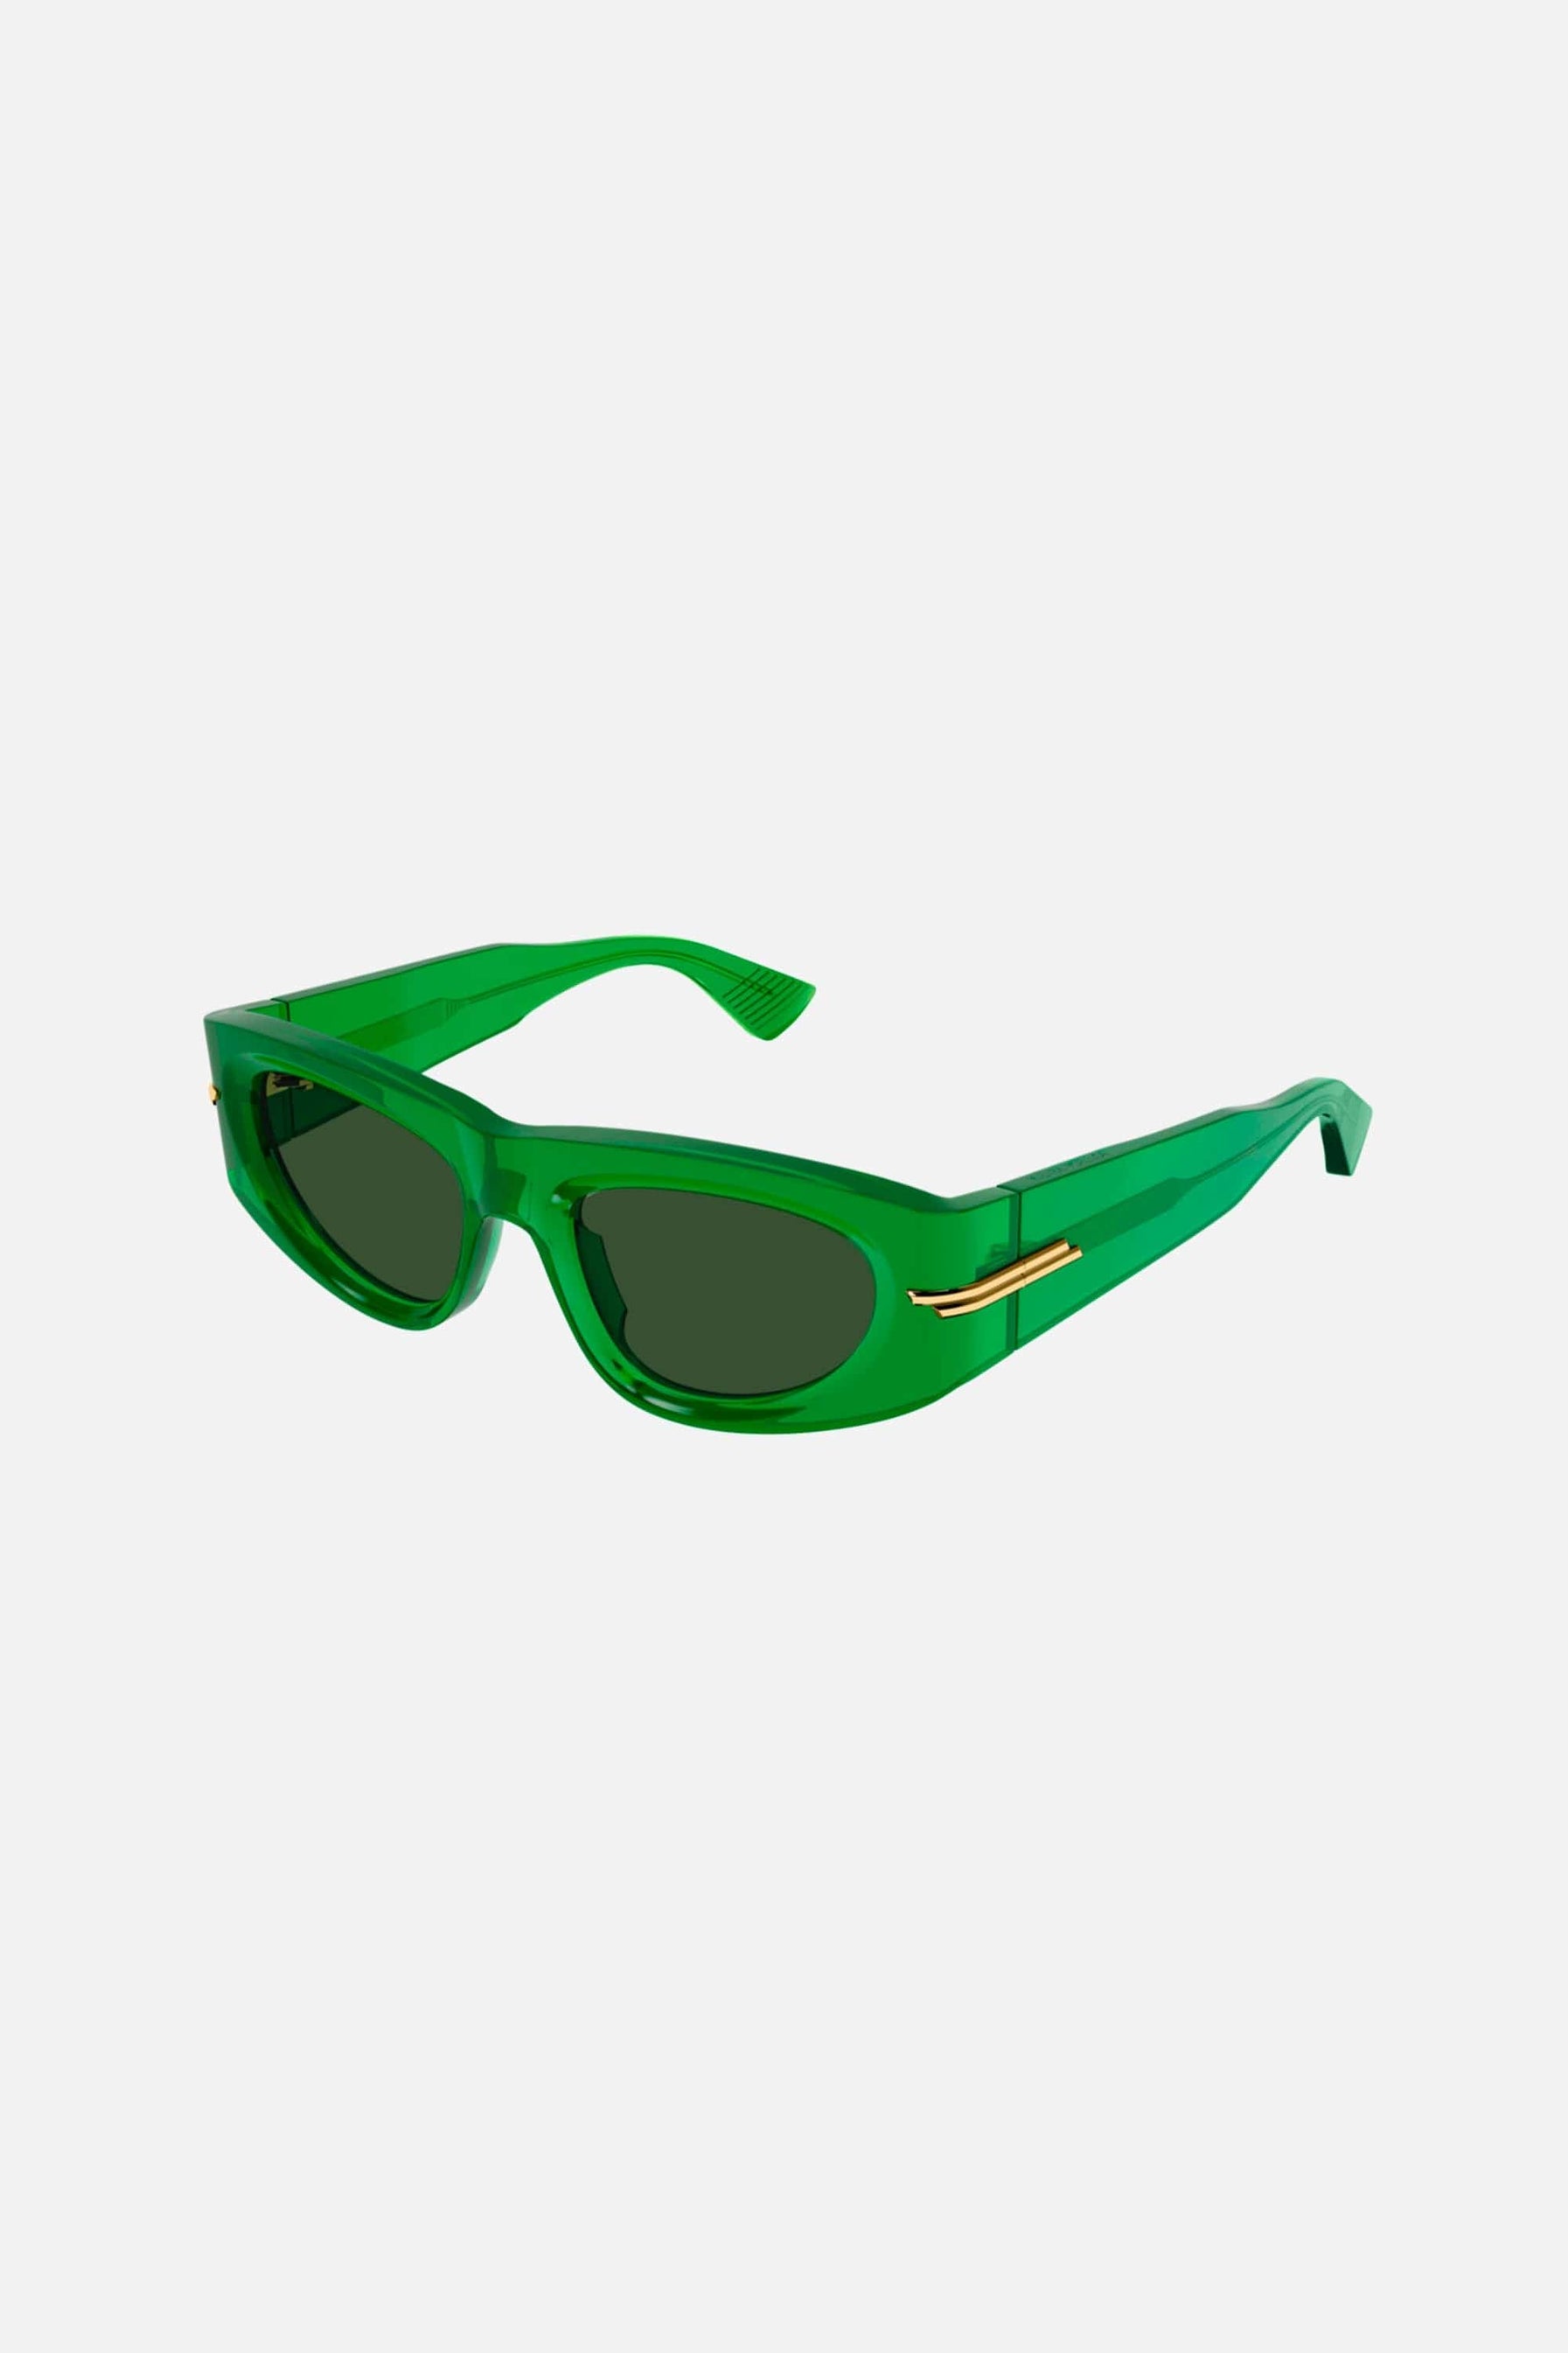 Bottega Veneta green rectangular sunglasses - Eyewear Club